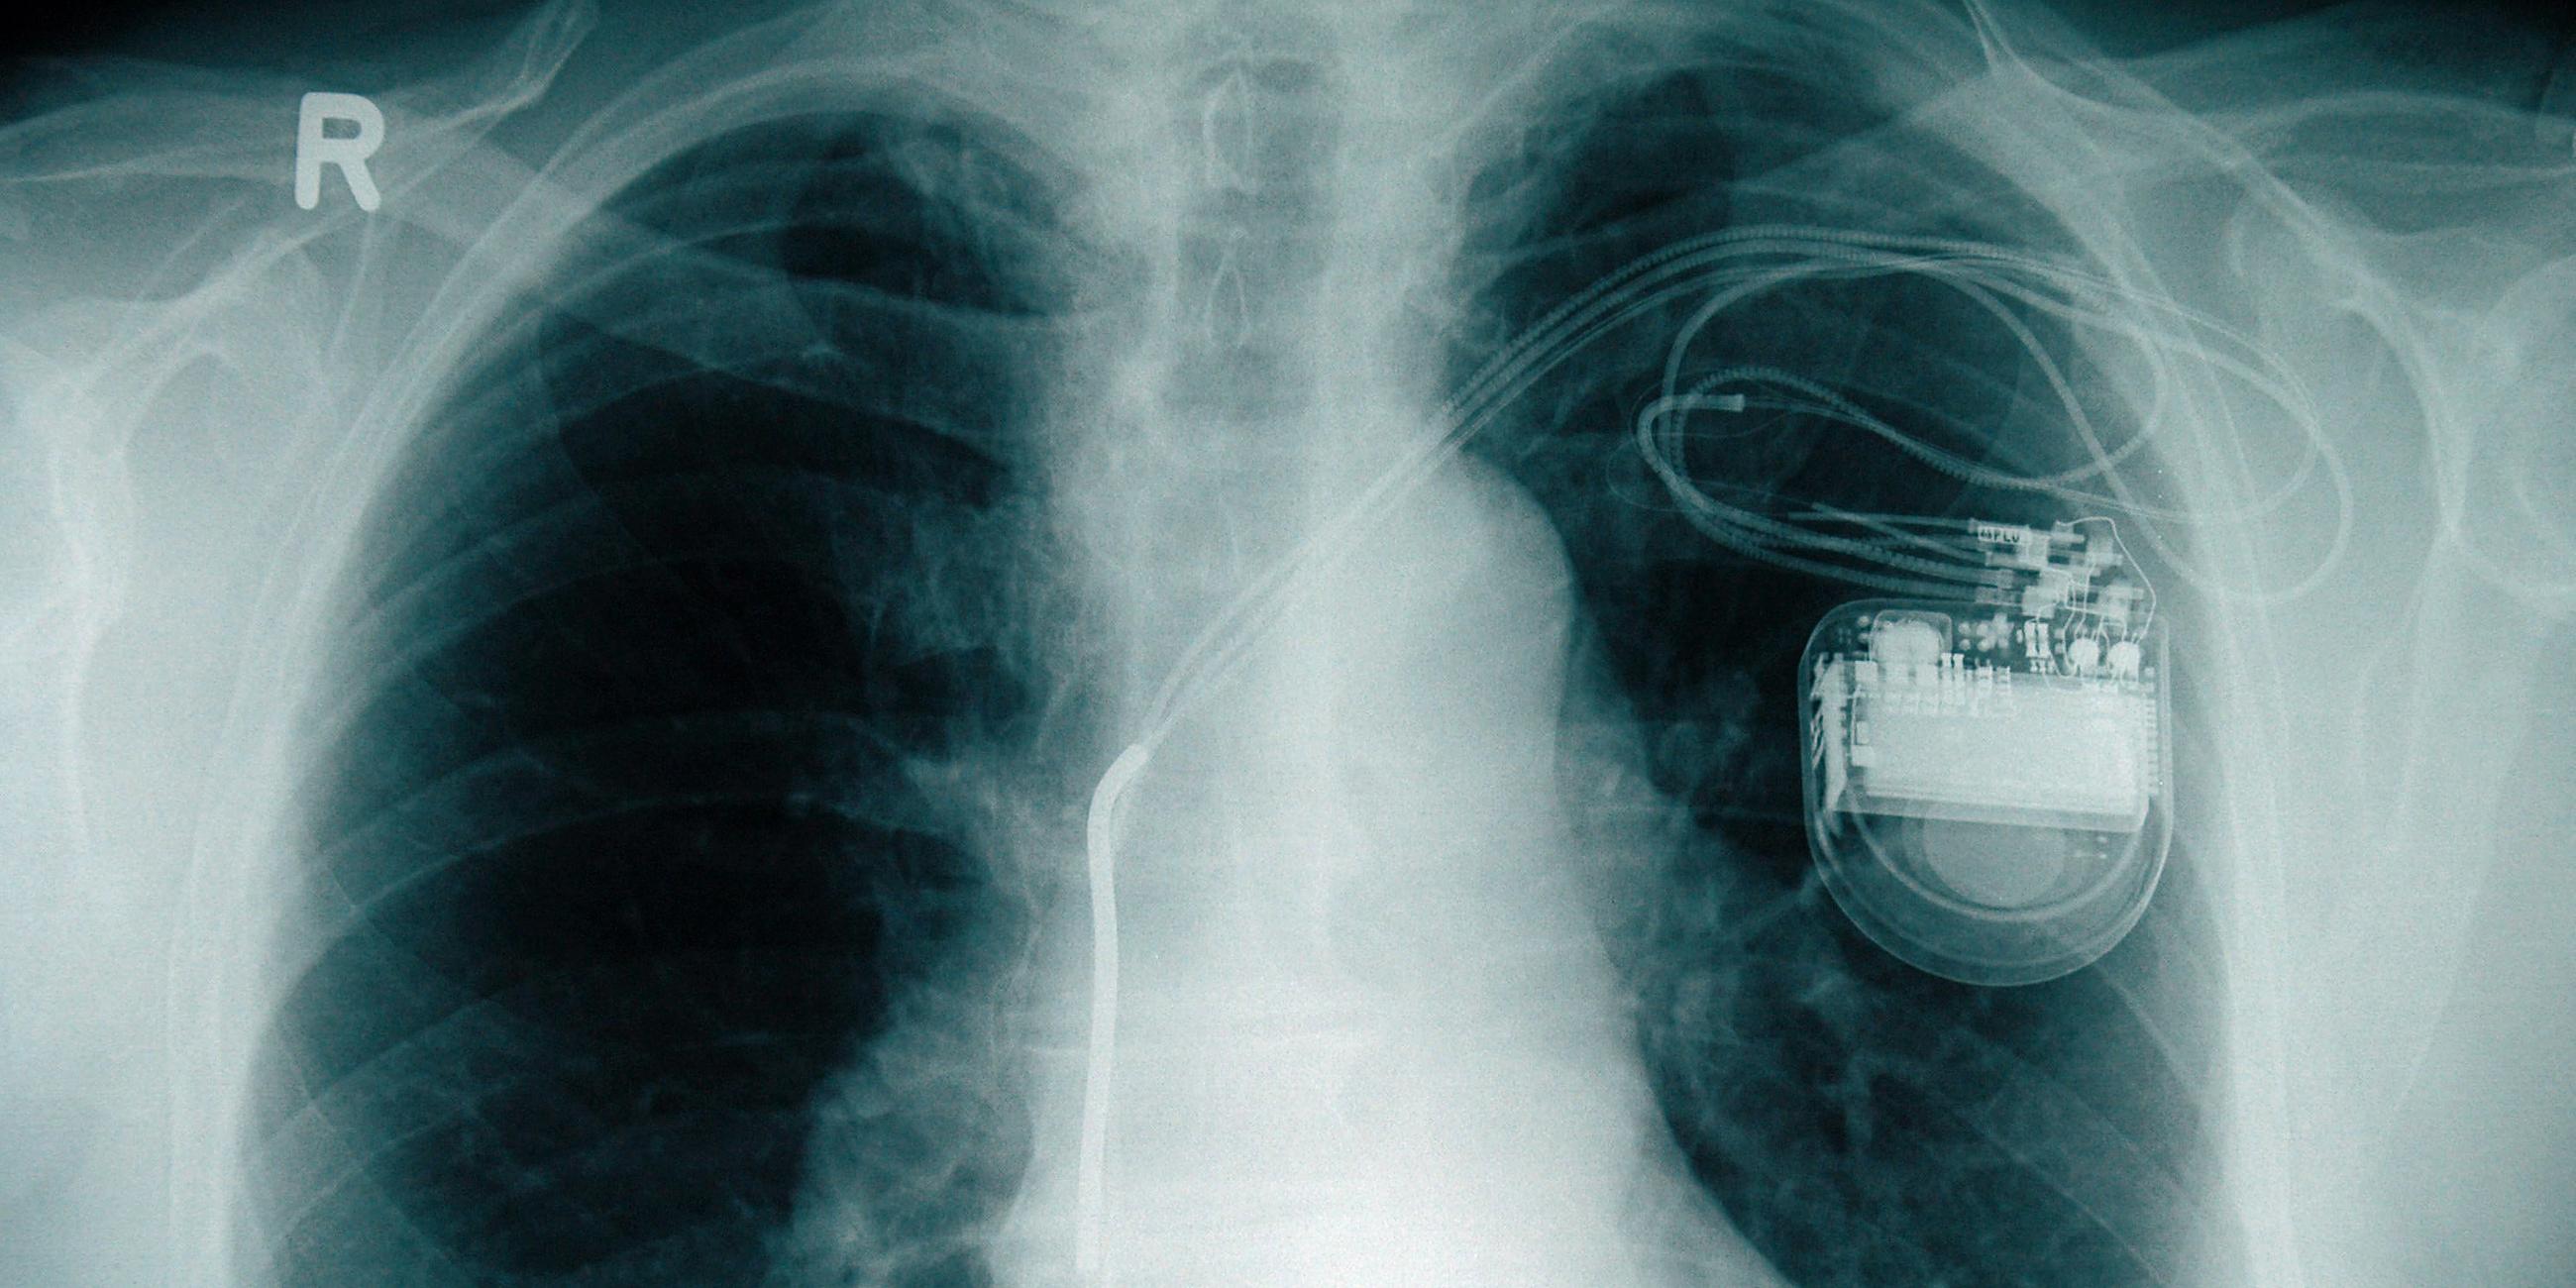 Archivfoto-Illustration: Röntgenbild mit Herzschrittmacher